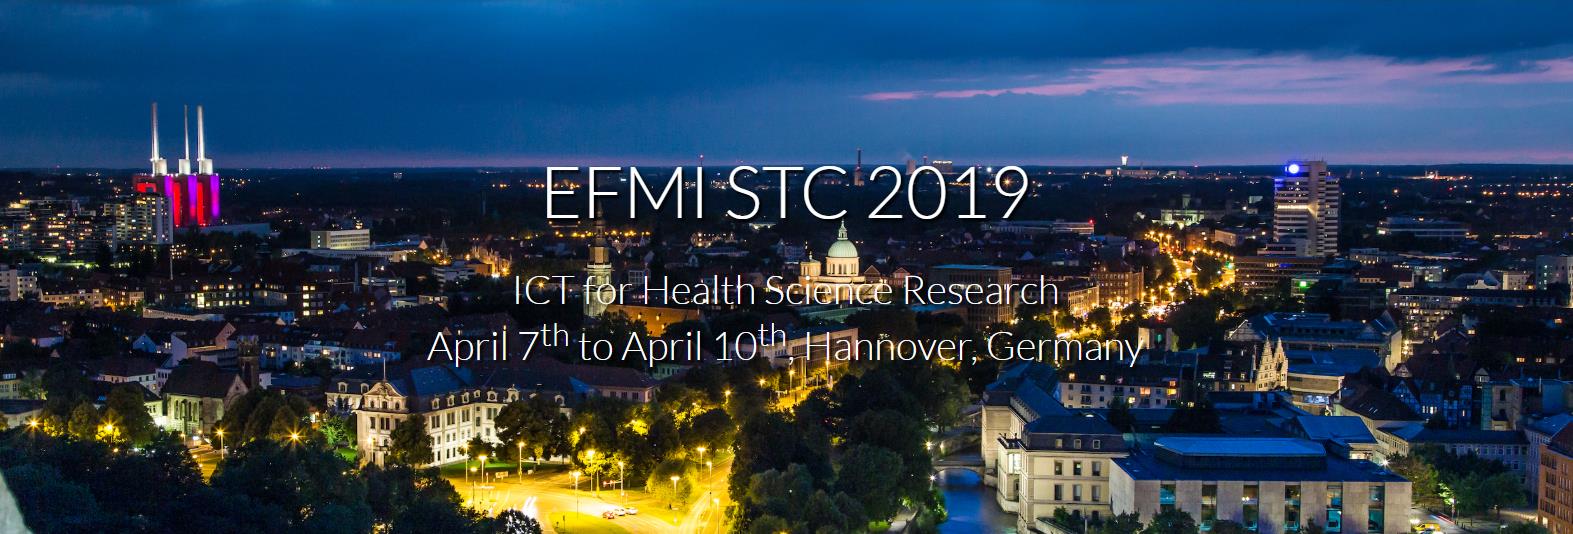 Конференция EFMI STC 2019, состоится в  7-10 апреля 2019 г. в Ганновере